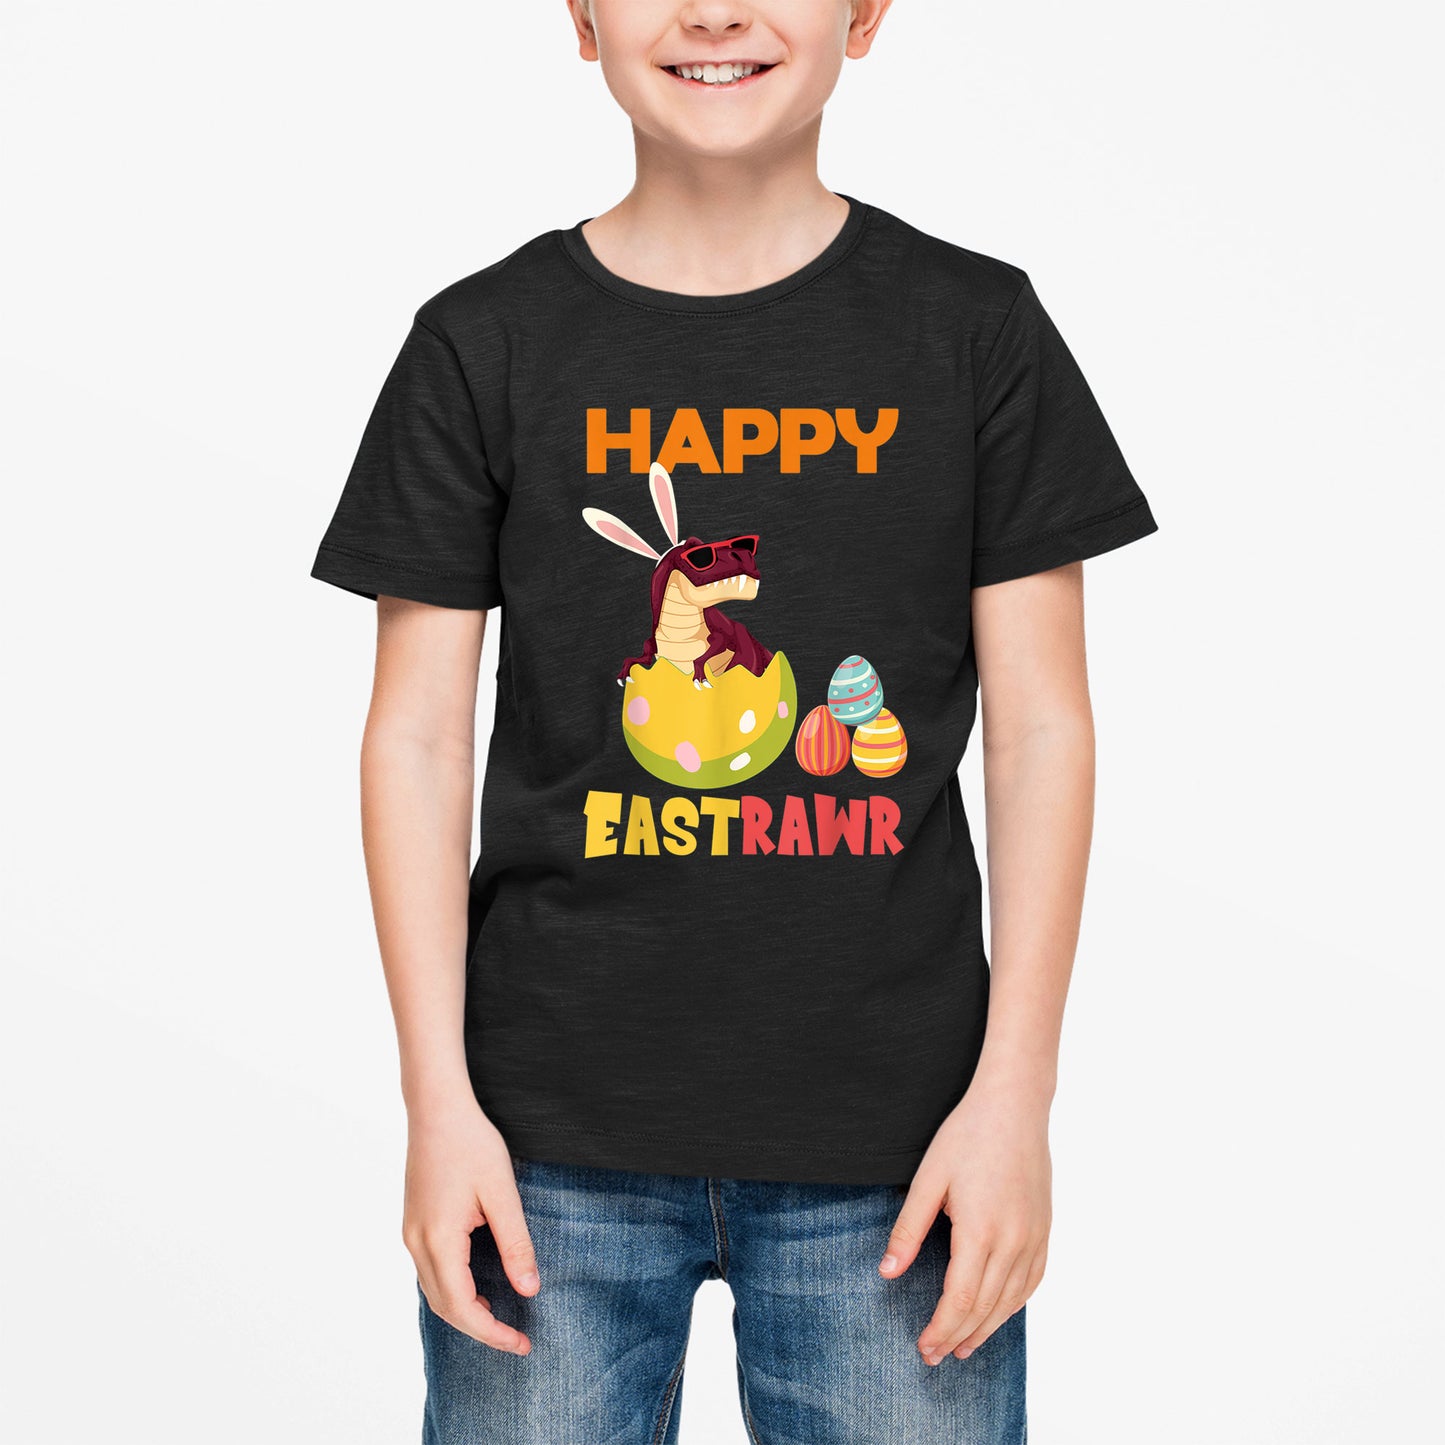 Dinosaur Happy Easter Shirt, Girls Boys Easter Shirt, Easter Gifts For Kids, Easter Gifts For Toddlers